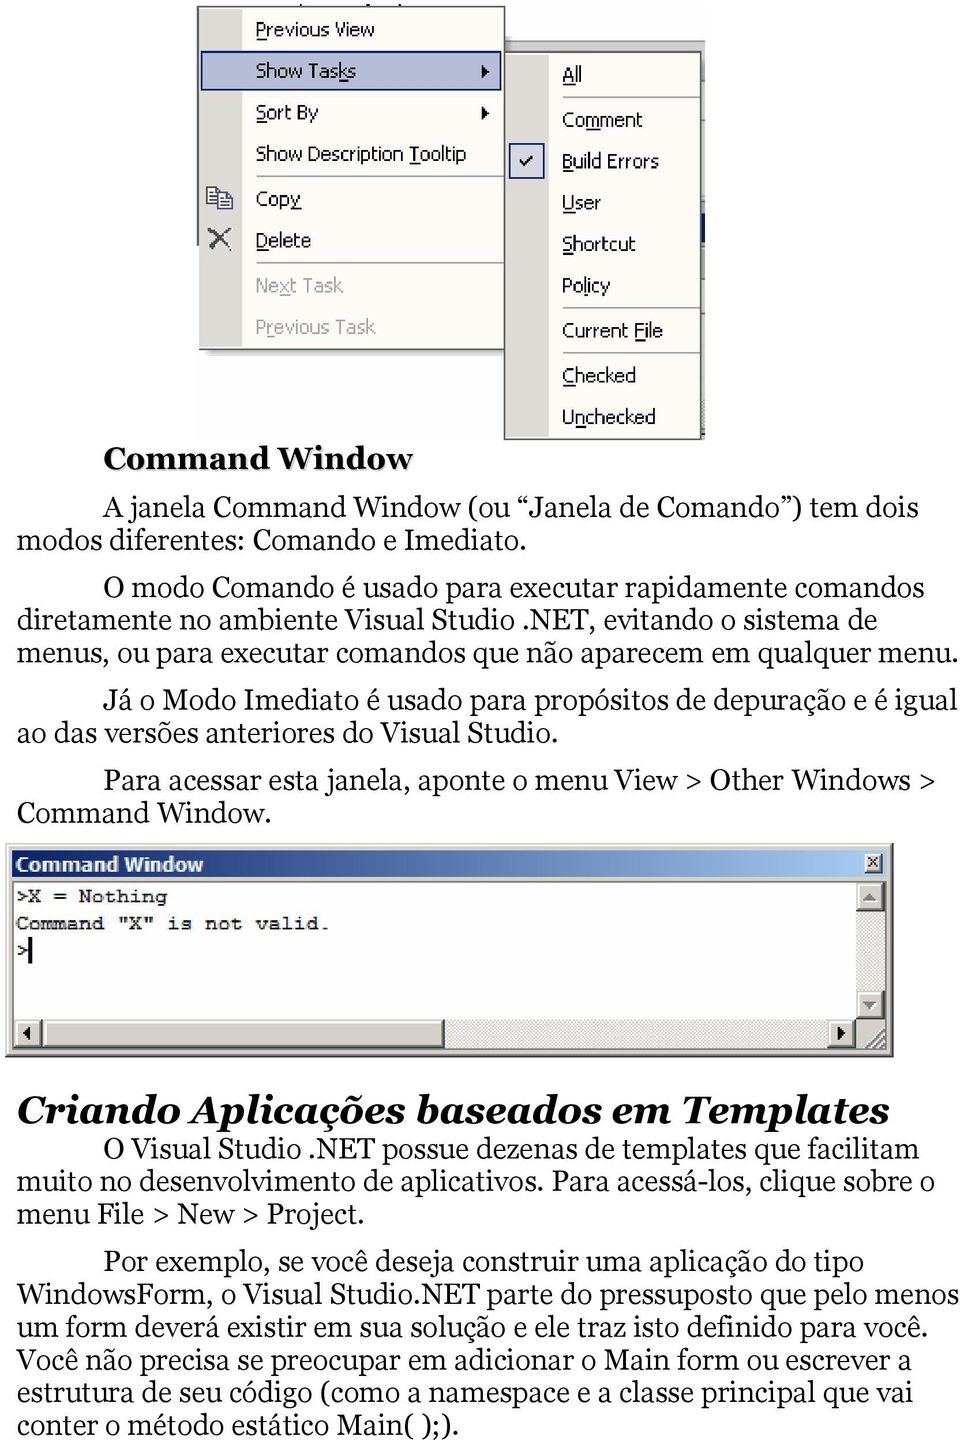 Já o Modo Imediato é usado para propósitos de depuração e é igual ao das versões anteriores do Visual Studio. Para acessar esta janela, aponte o menu View > Other Windows > Command Window.